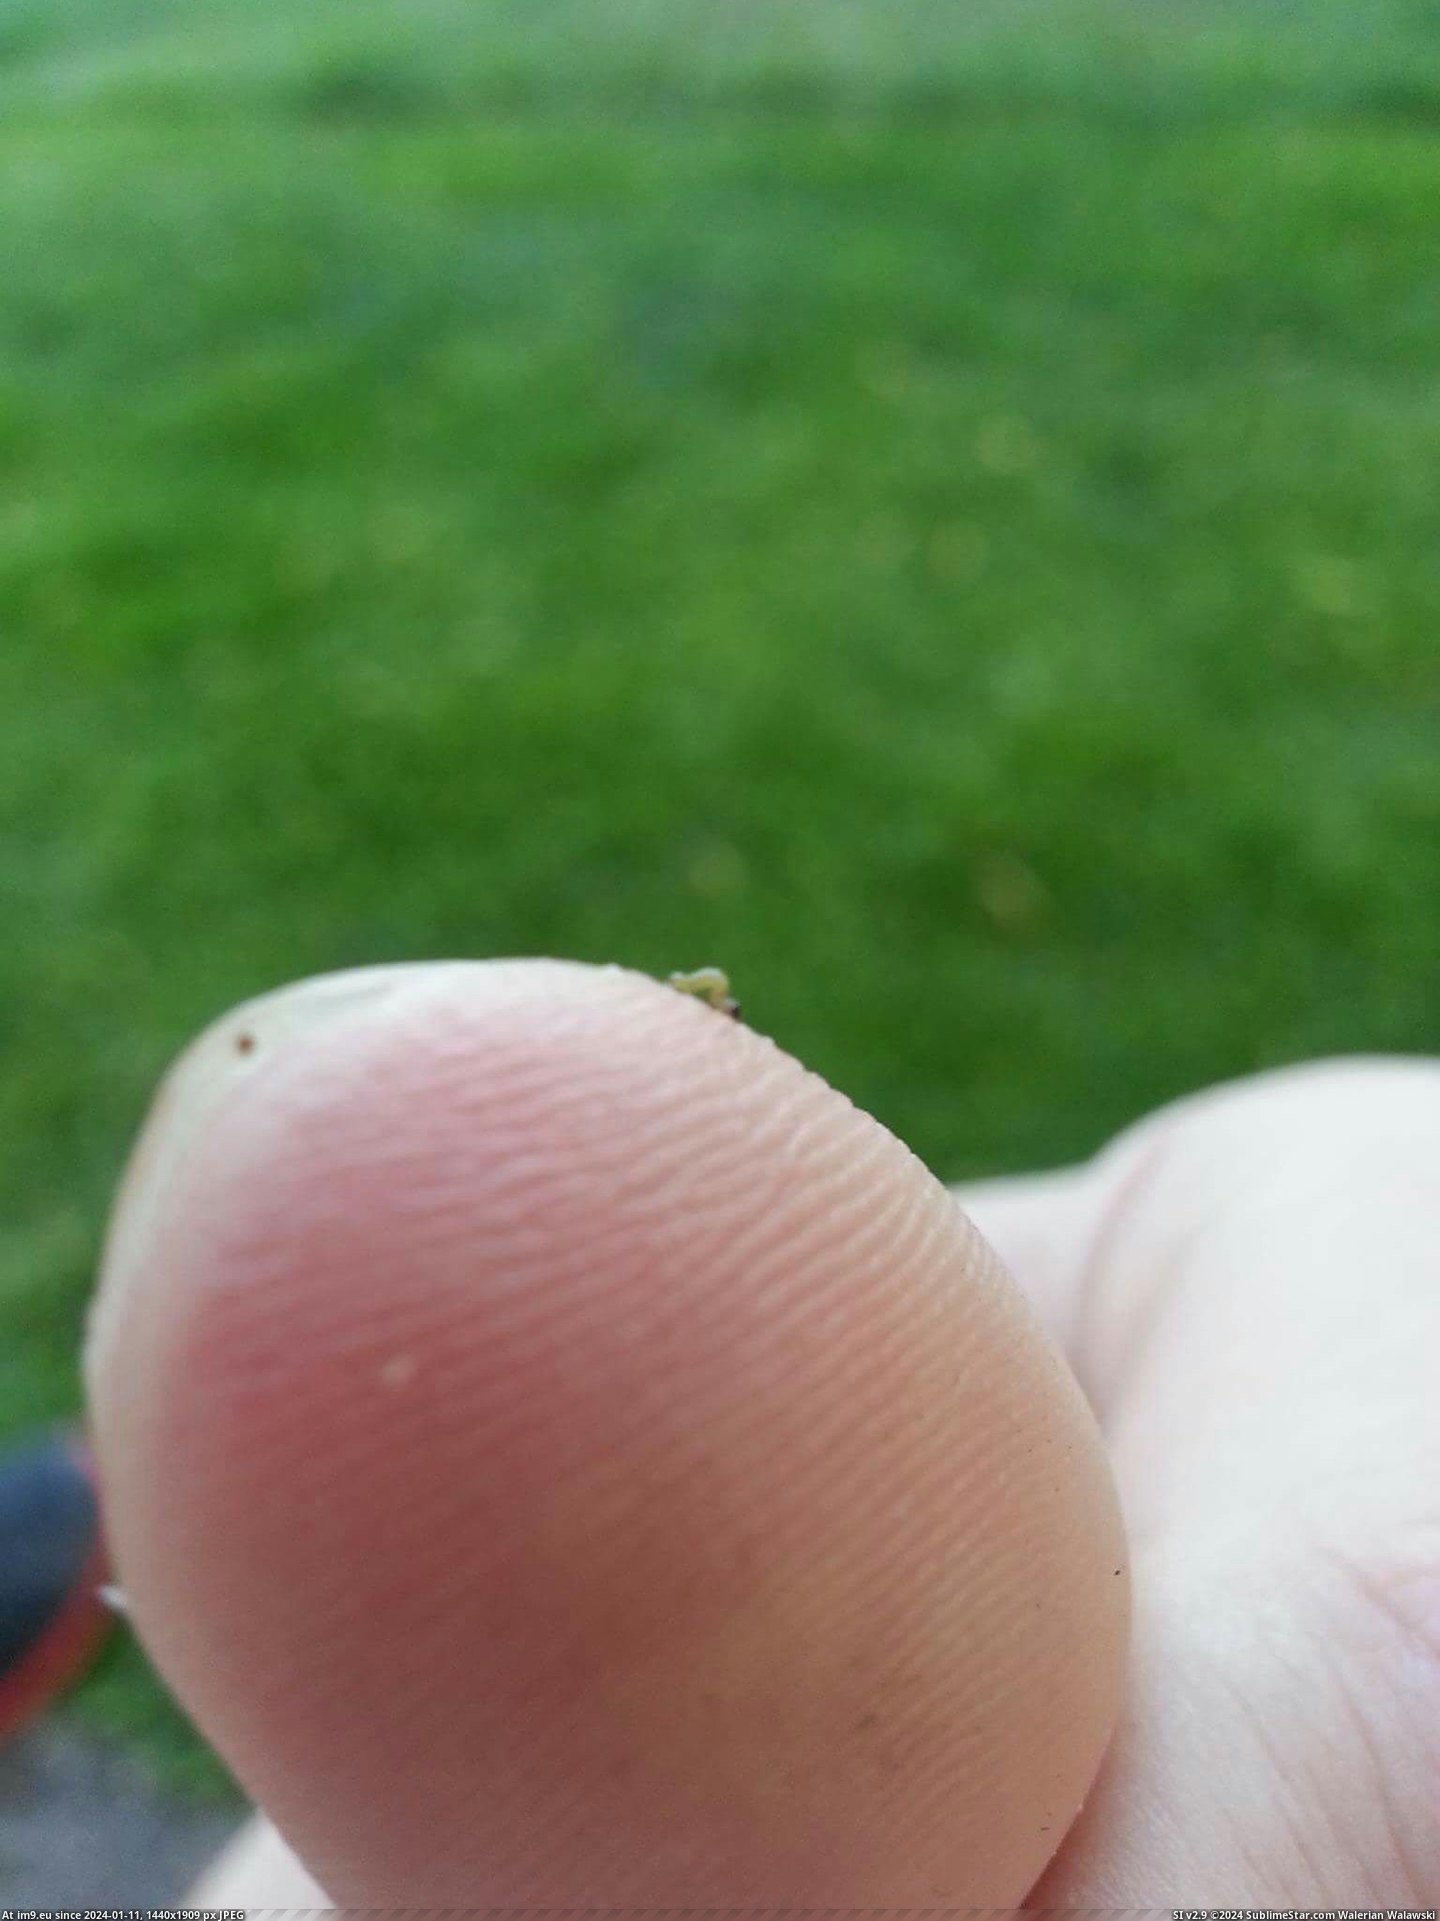 [Mildlyinteresting] This tiny inchworm I found (in My r/MILDLYINTERESTING favs)